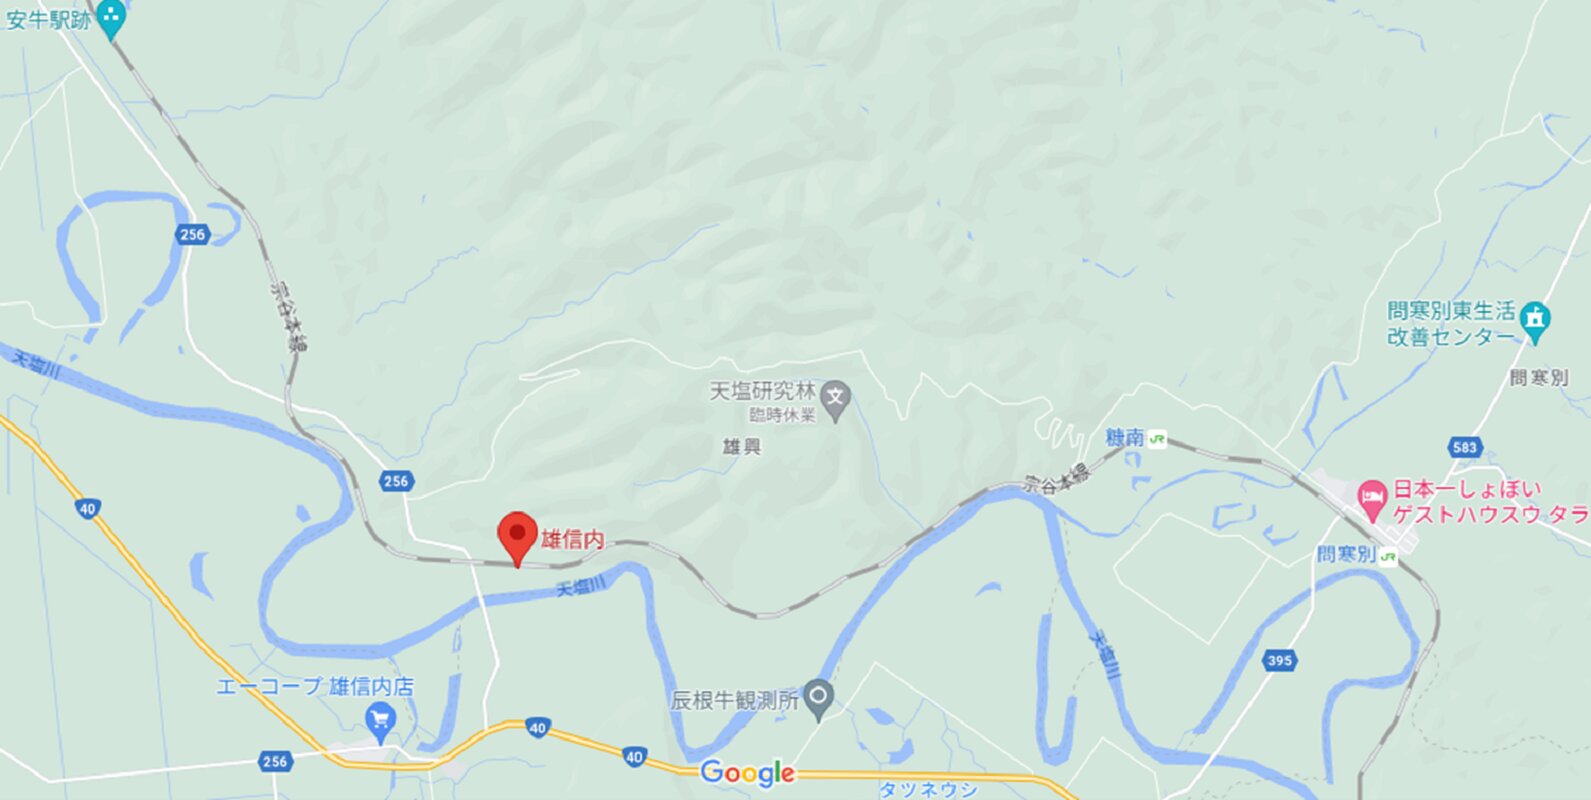 雄信内駅と周辺の地図　(C) Google